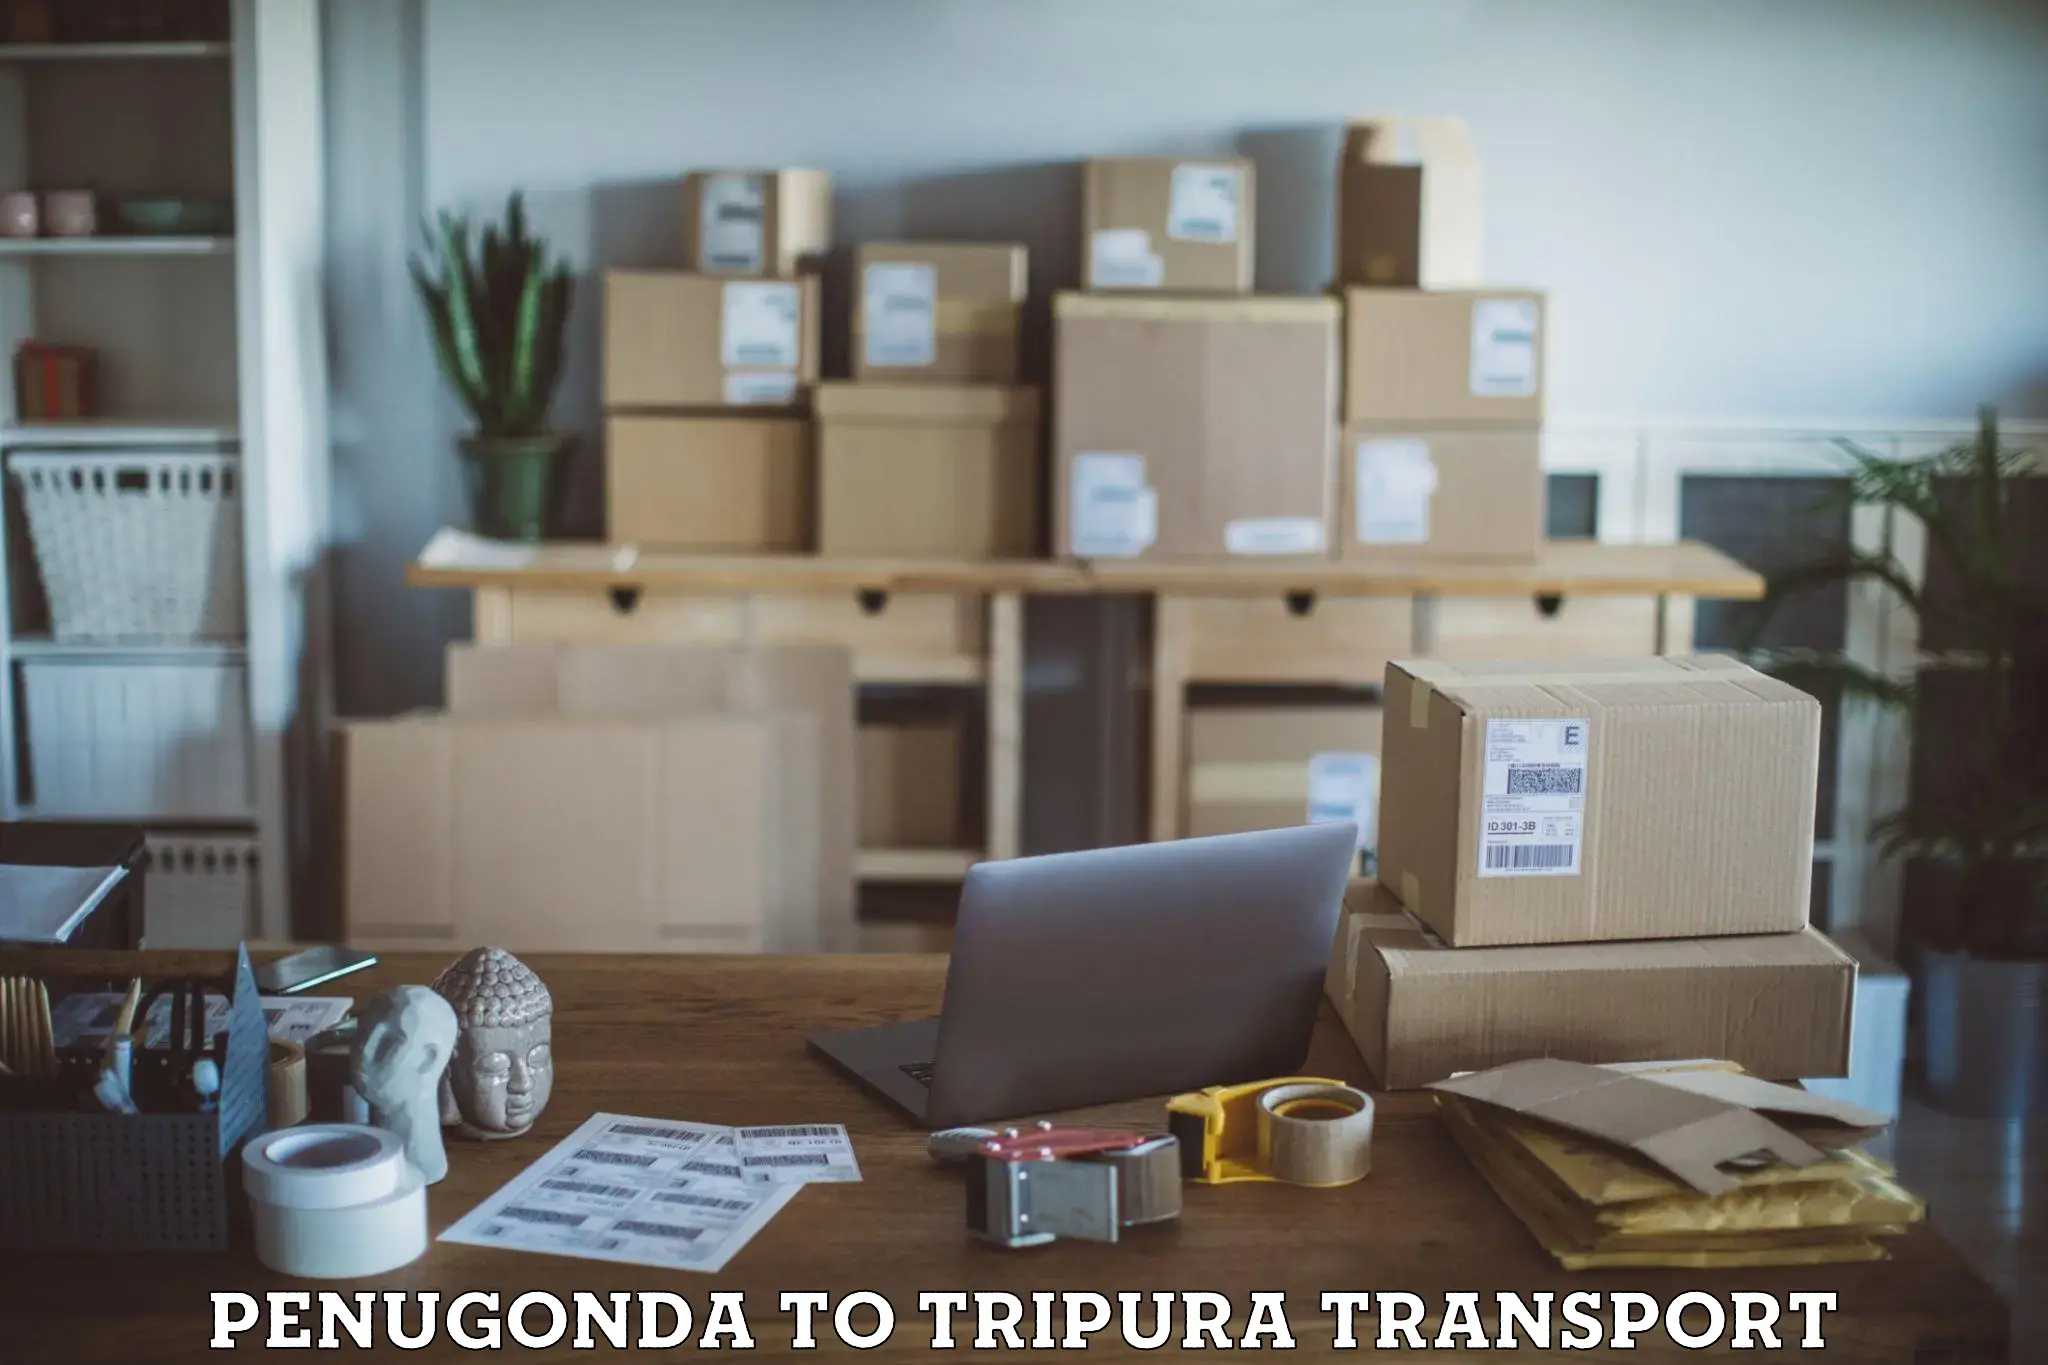 Truck transport companies in India Penugonda to Tripura